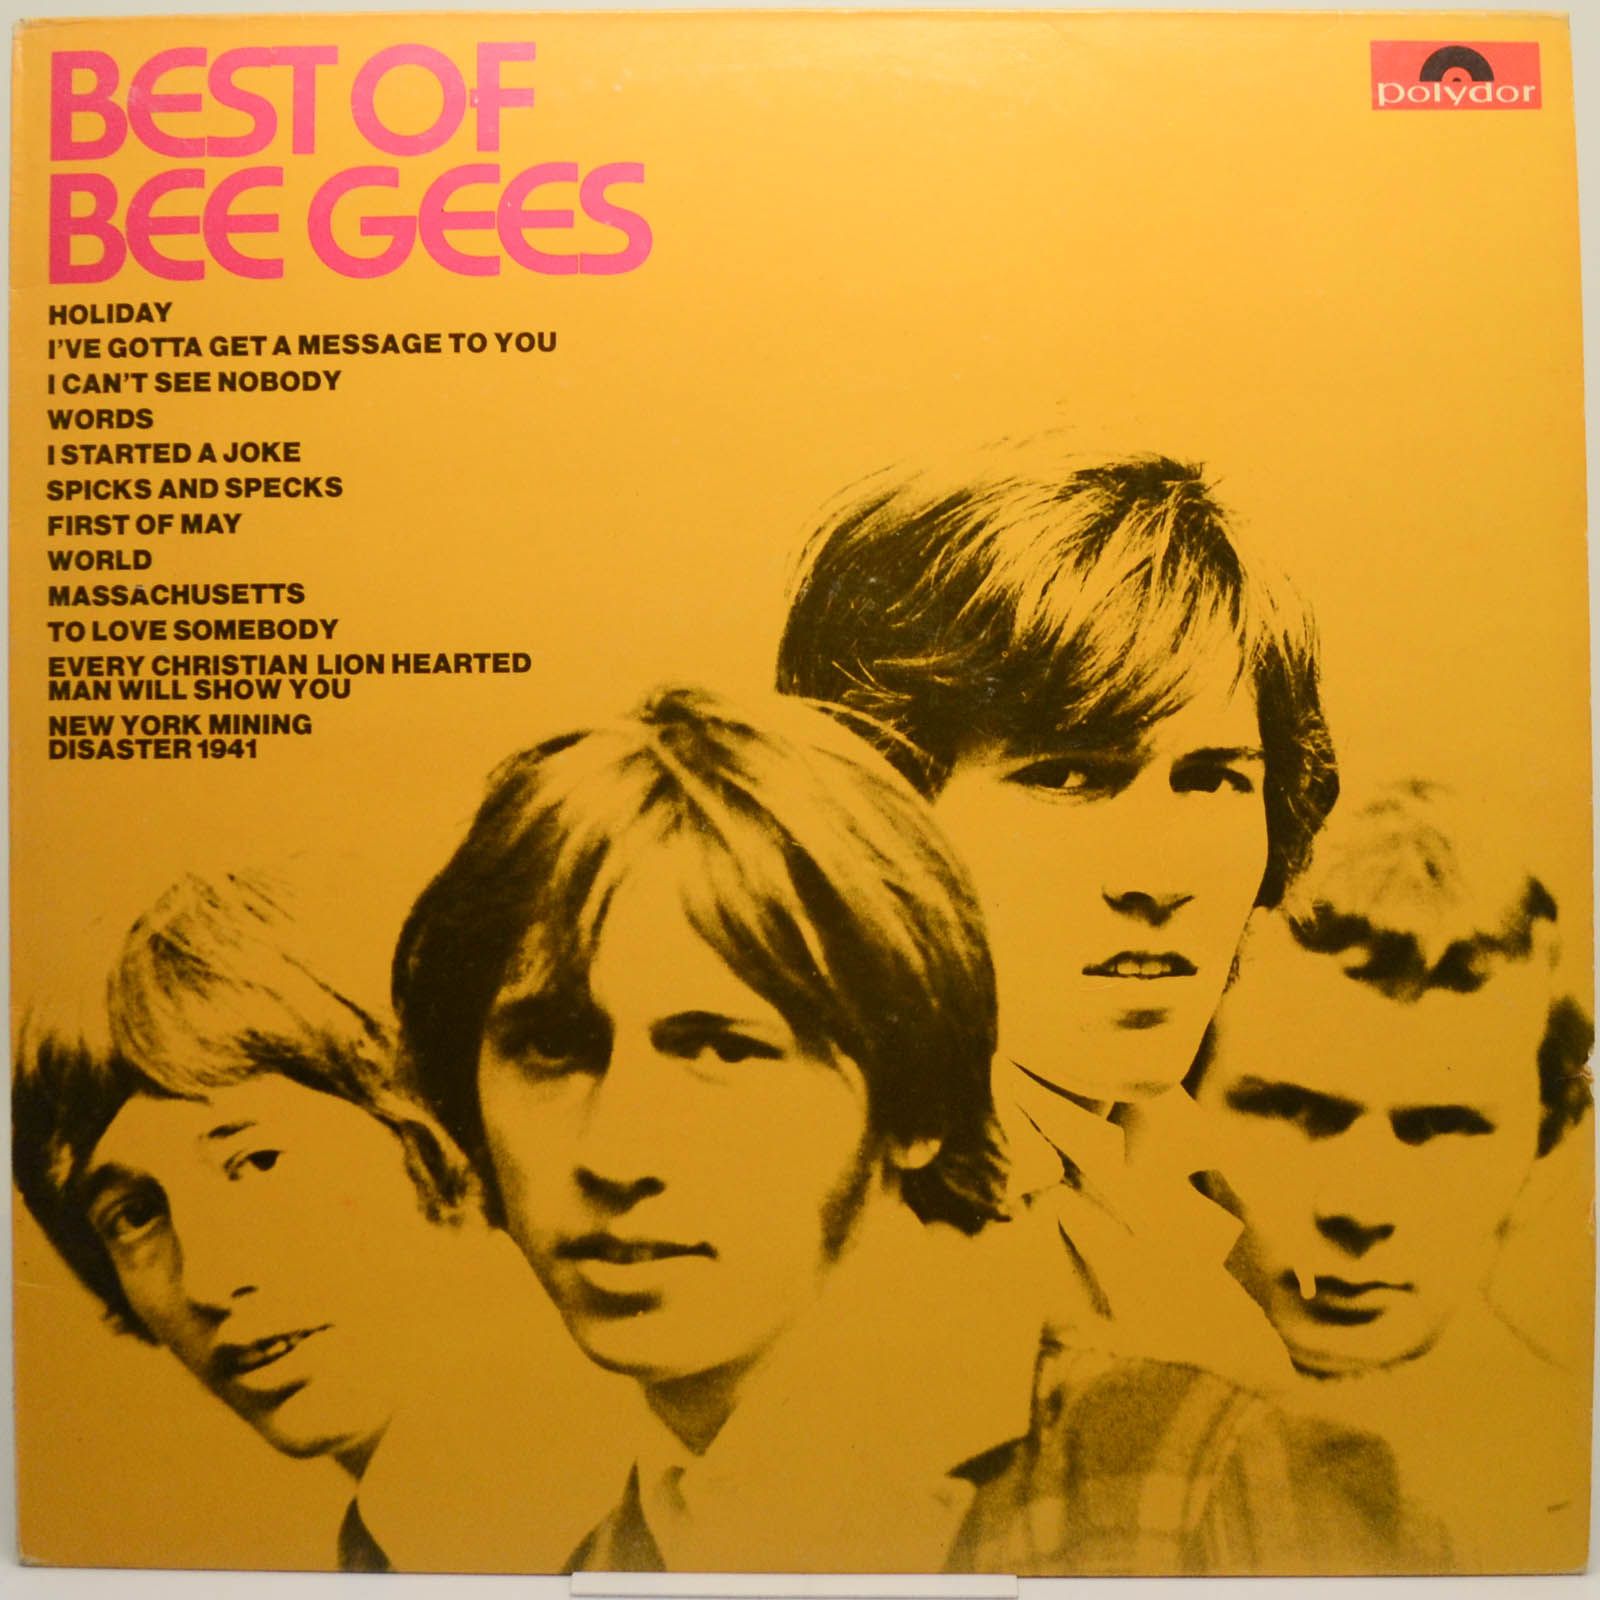 Bee Gees — Best Of Bee Gees (1-st, UK), 1969